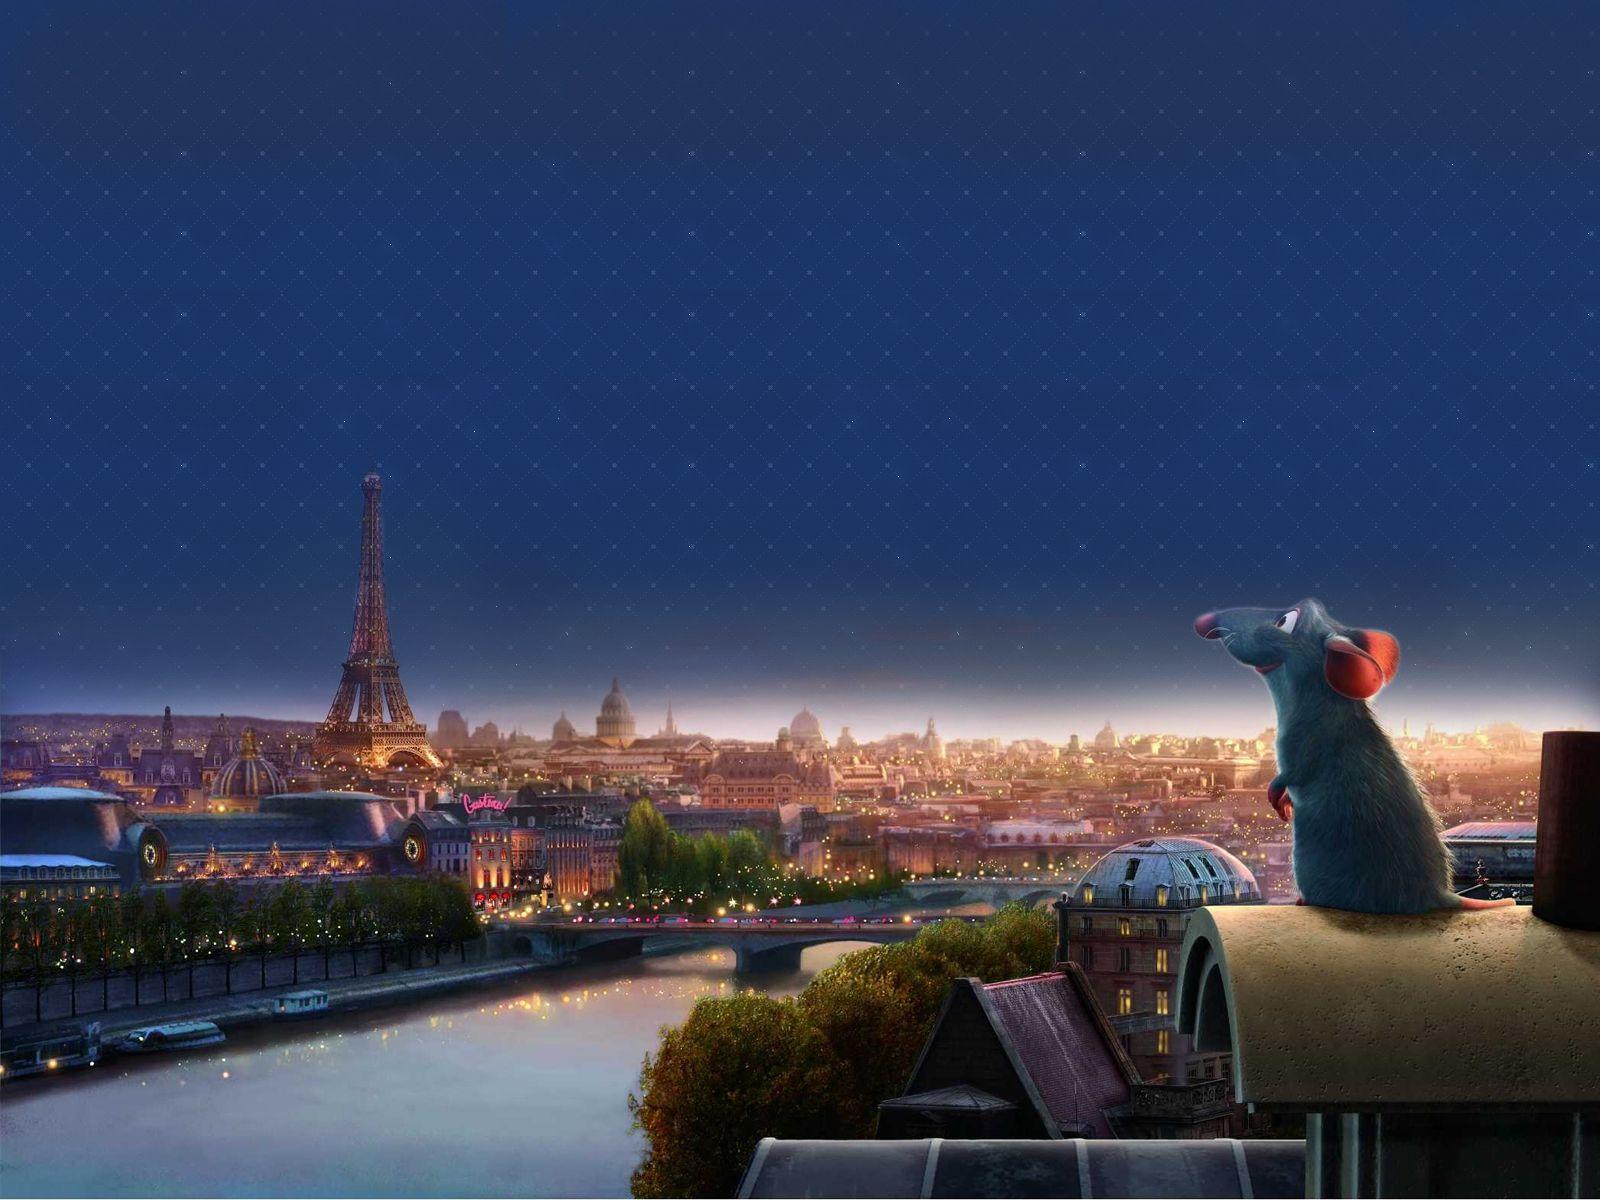 MX 69 Pixar Wallpaper, Pixar Adorable Desktop Pics For Free+